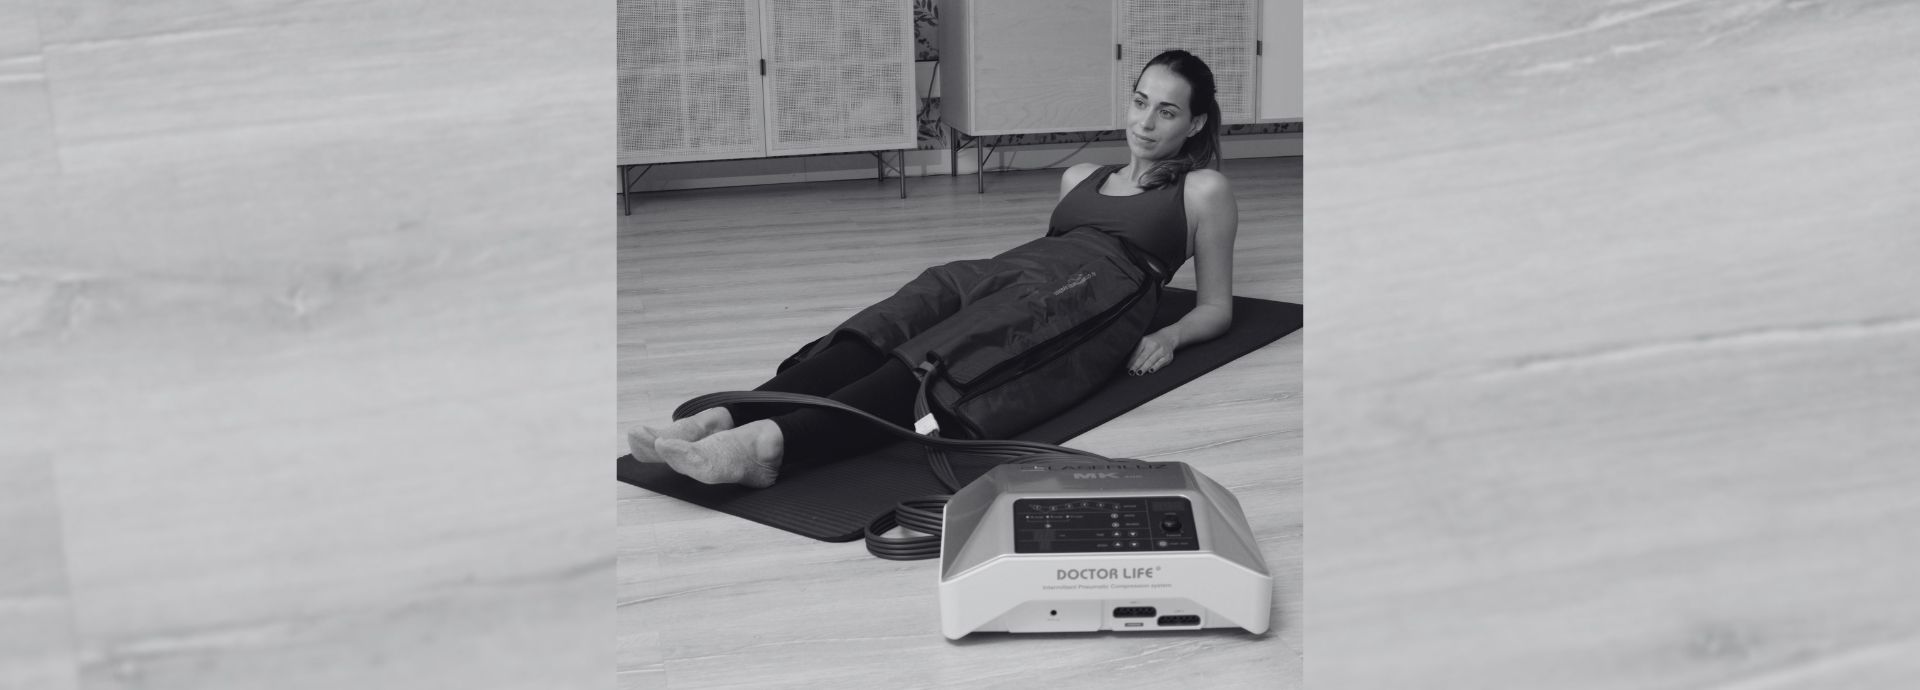 Foto en blanco y negro de una persona que recibe un tratamiento estético con el equipo PRESOTERAPIA ELIXIA LITE, tumbada en una esterilla de yoga sobre un suelo de madera.